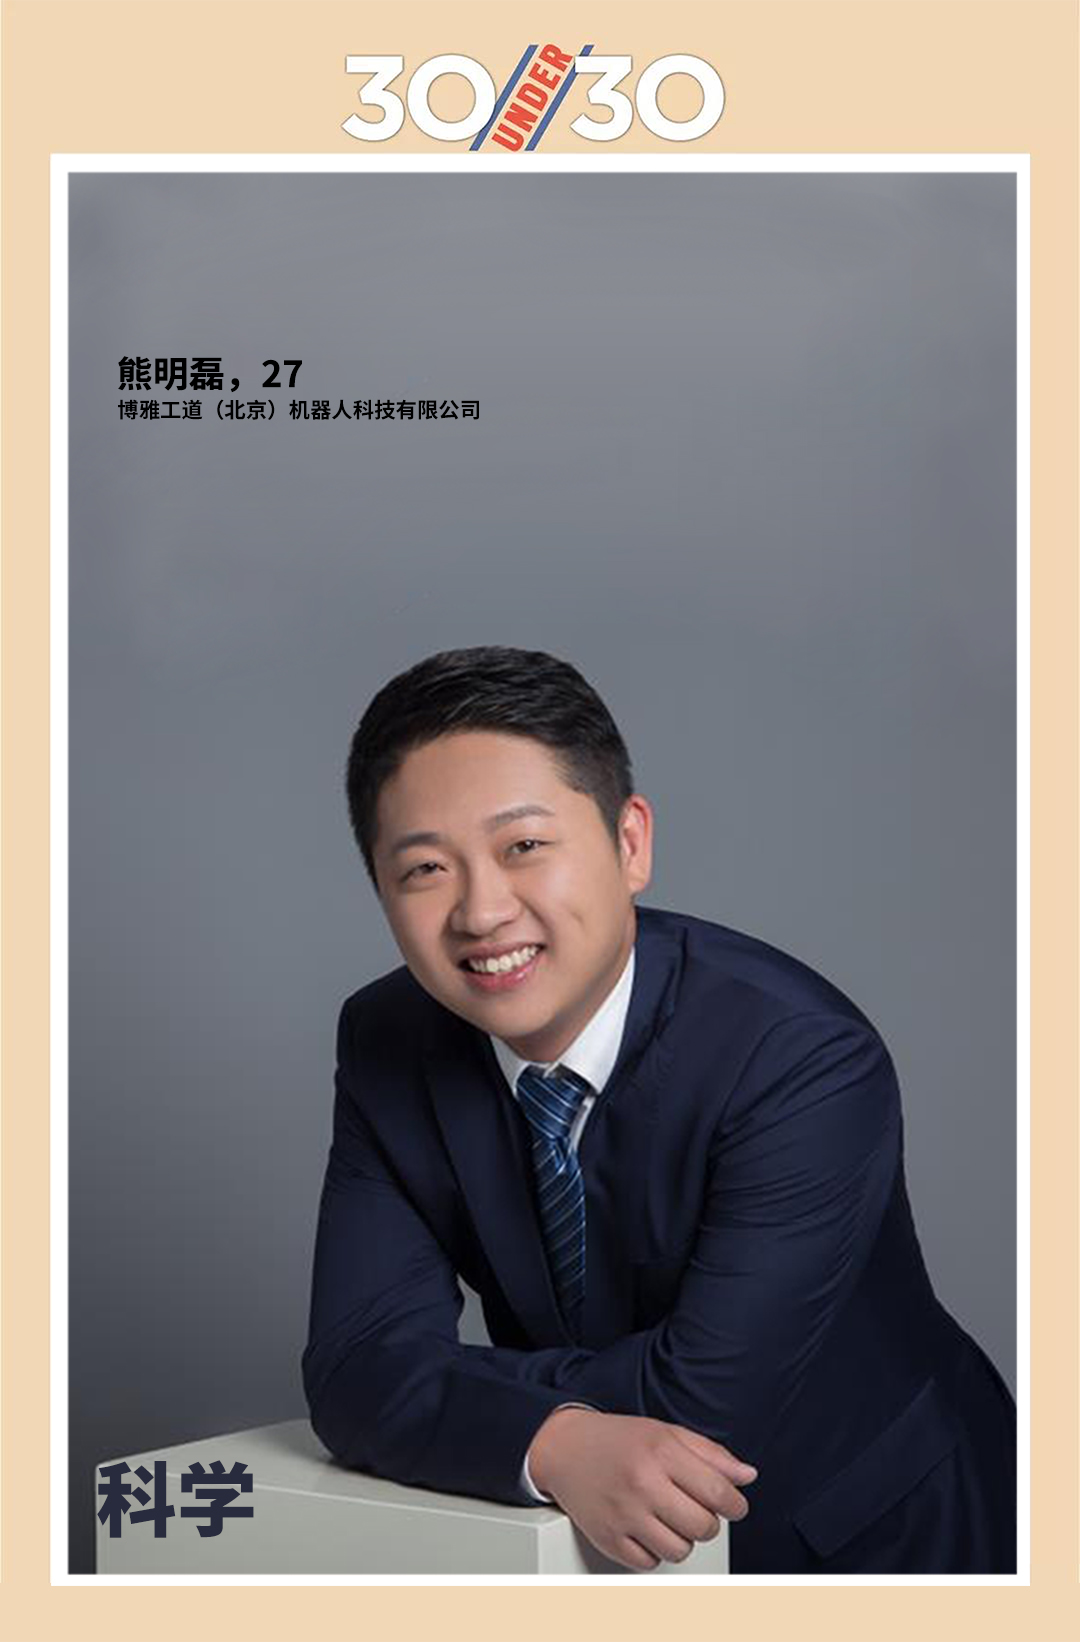 博雅工道CEO熊明磊先生入选福布斯2018年中国“30岁以下精英”榜